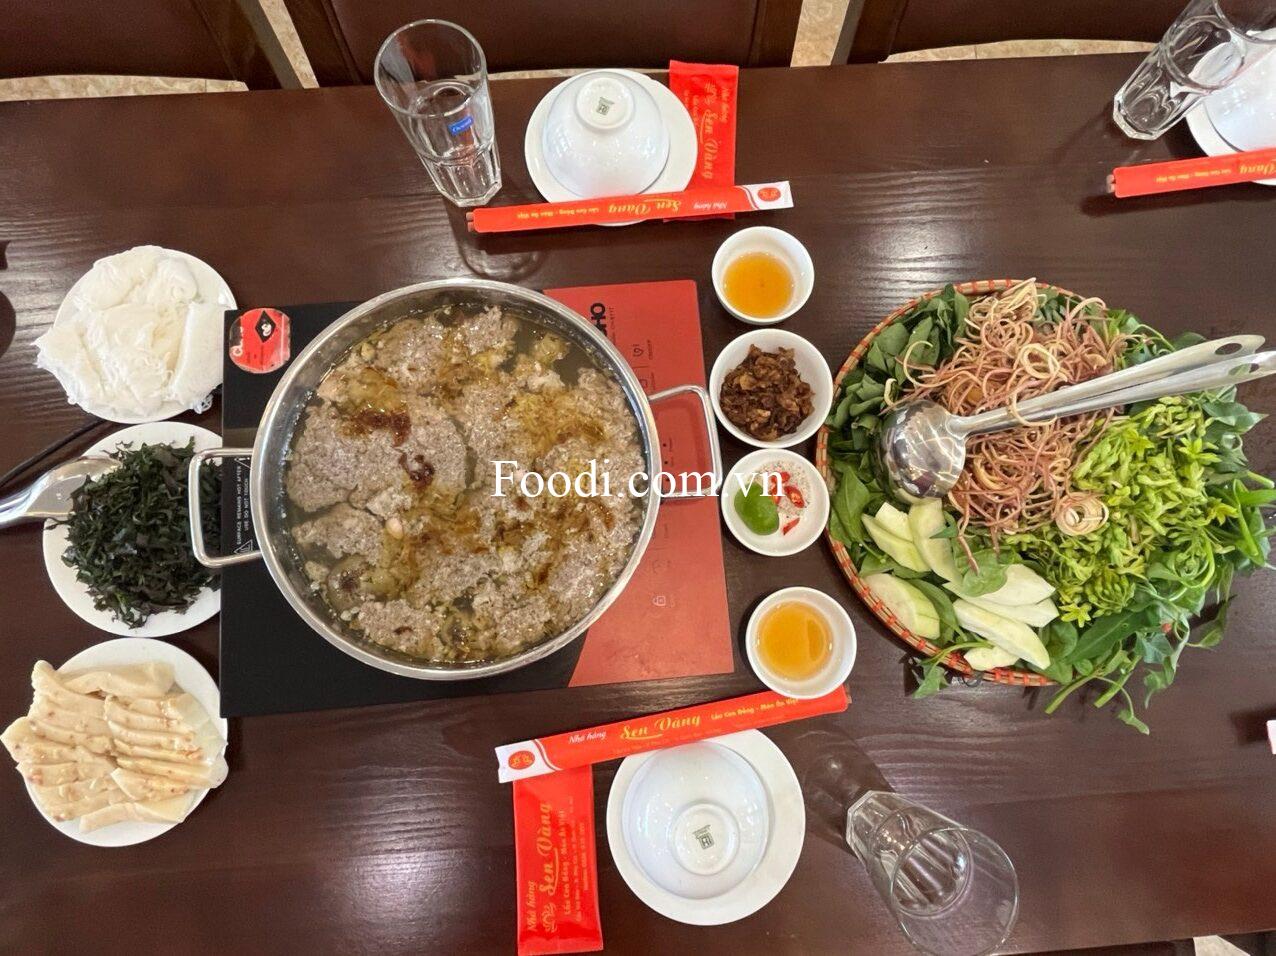 Top 9 Nhà hàng quán lẩu cua đồng Hòa Lạc ngon chuẩn vị nổi tiếng